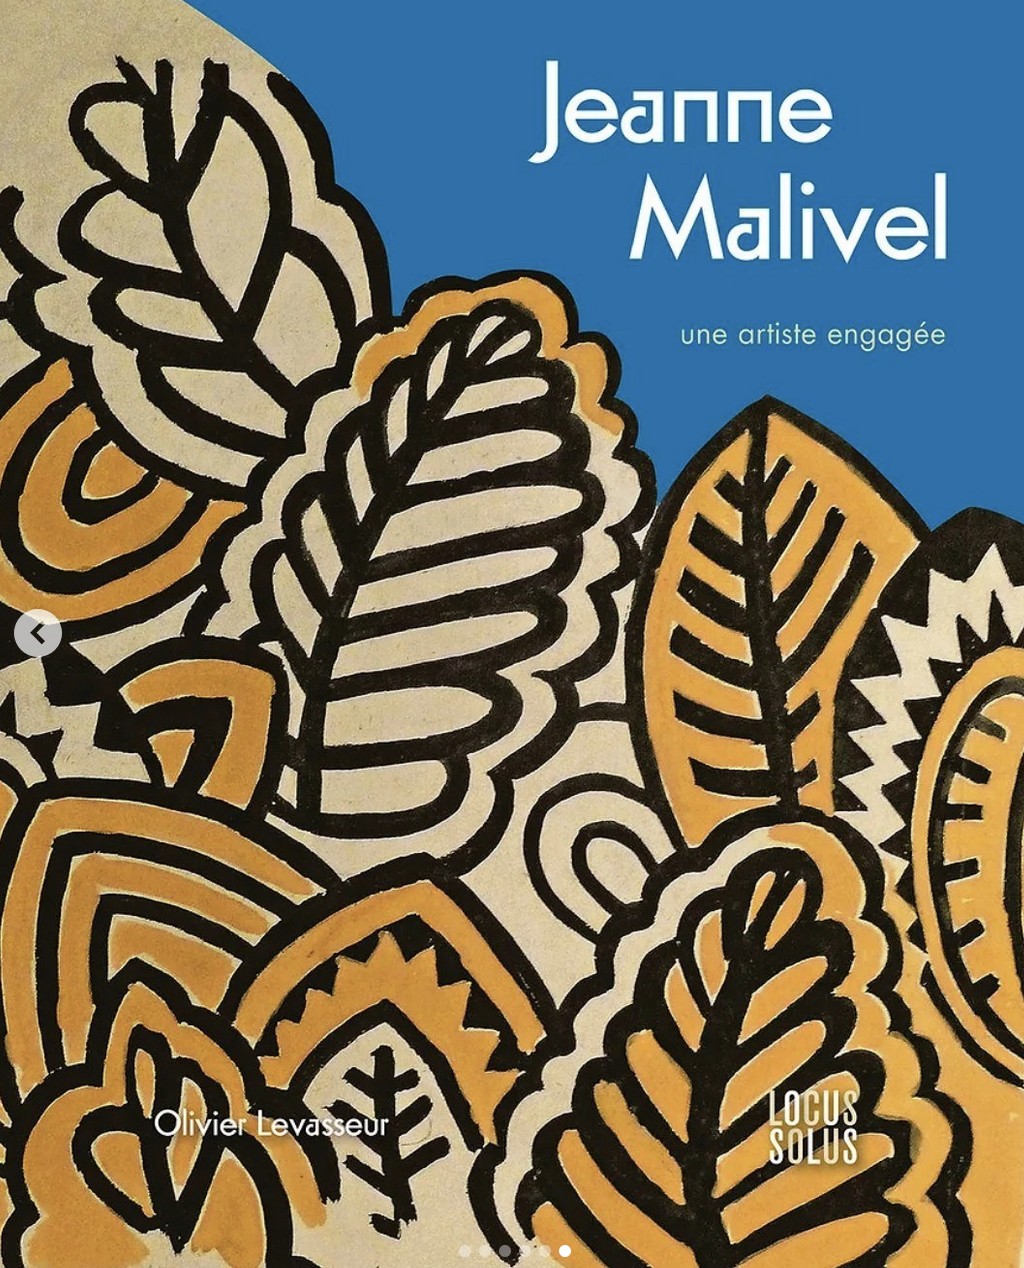 Livre sur Jeanne Malivel